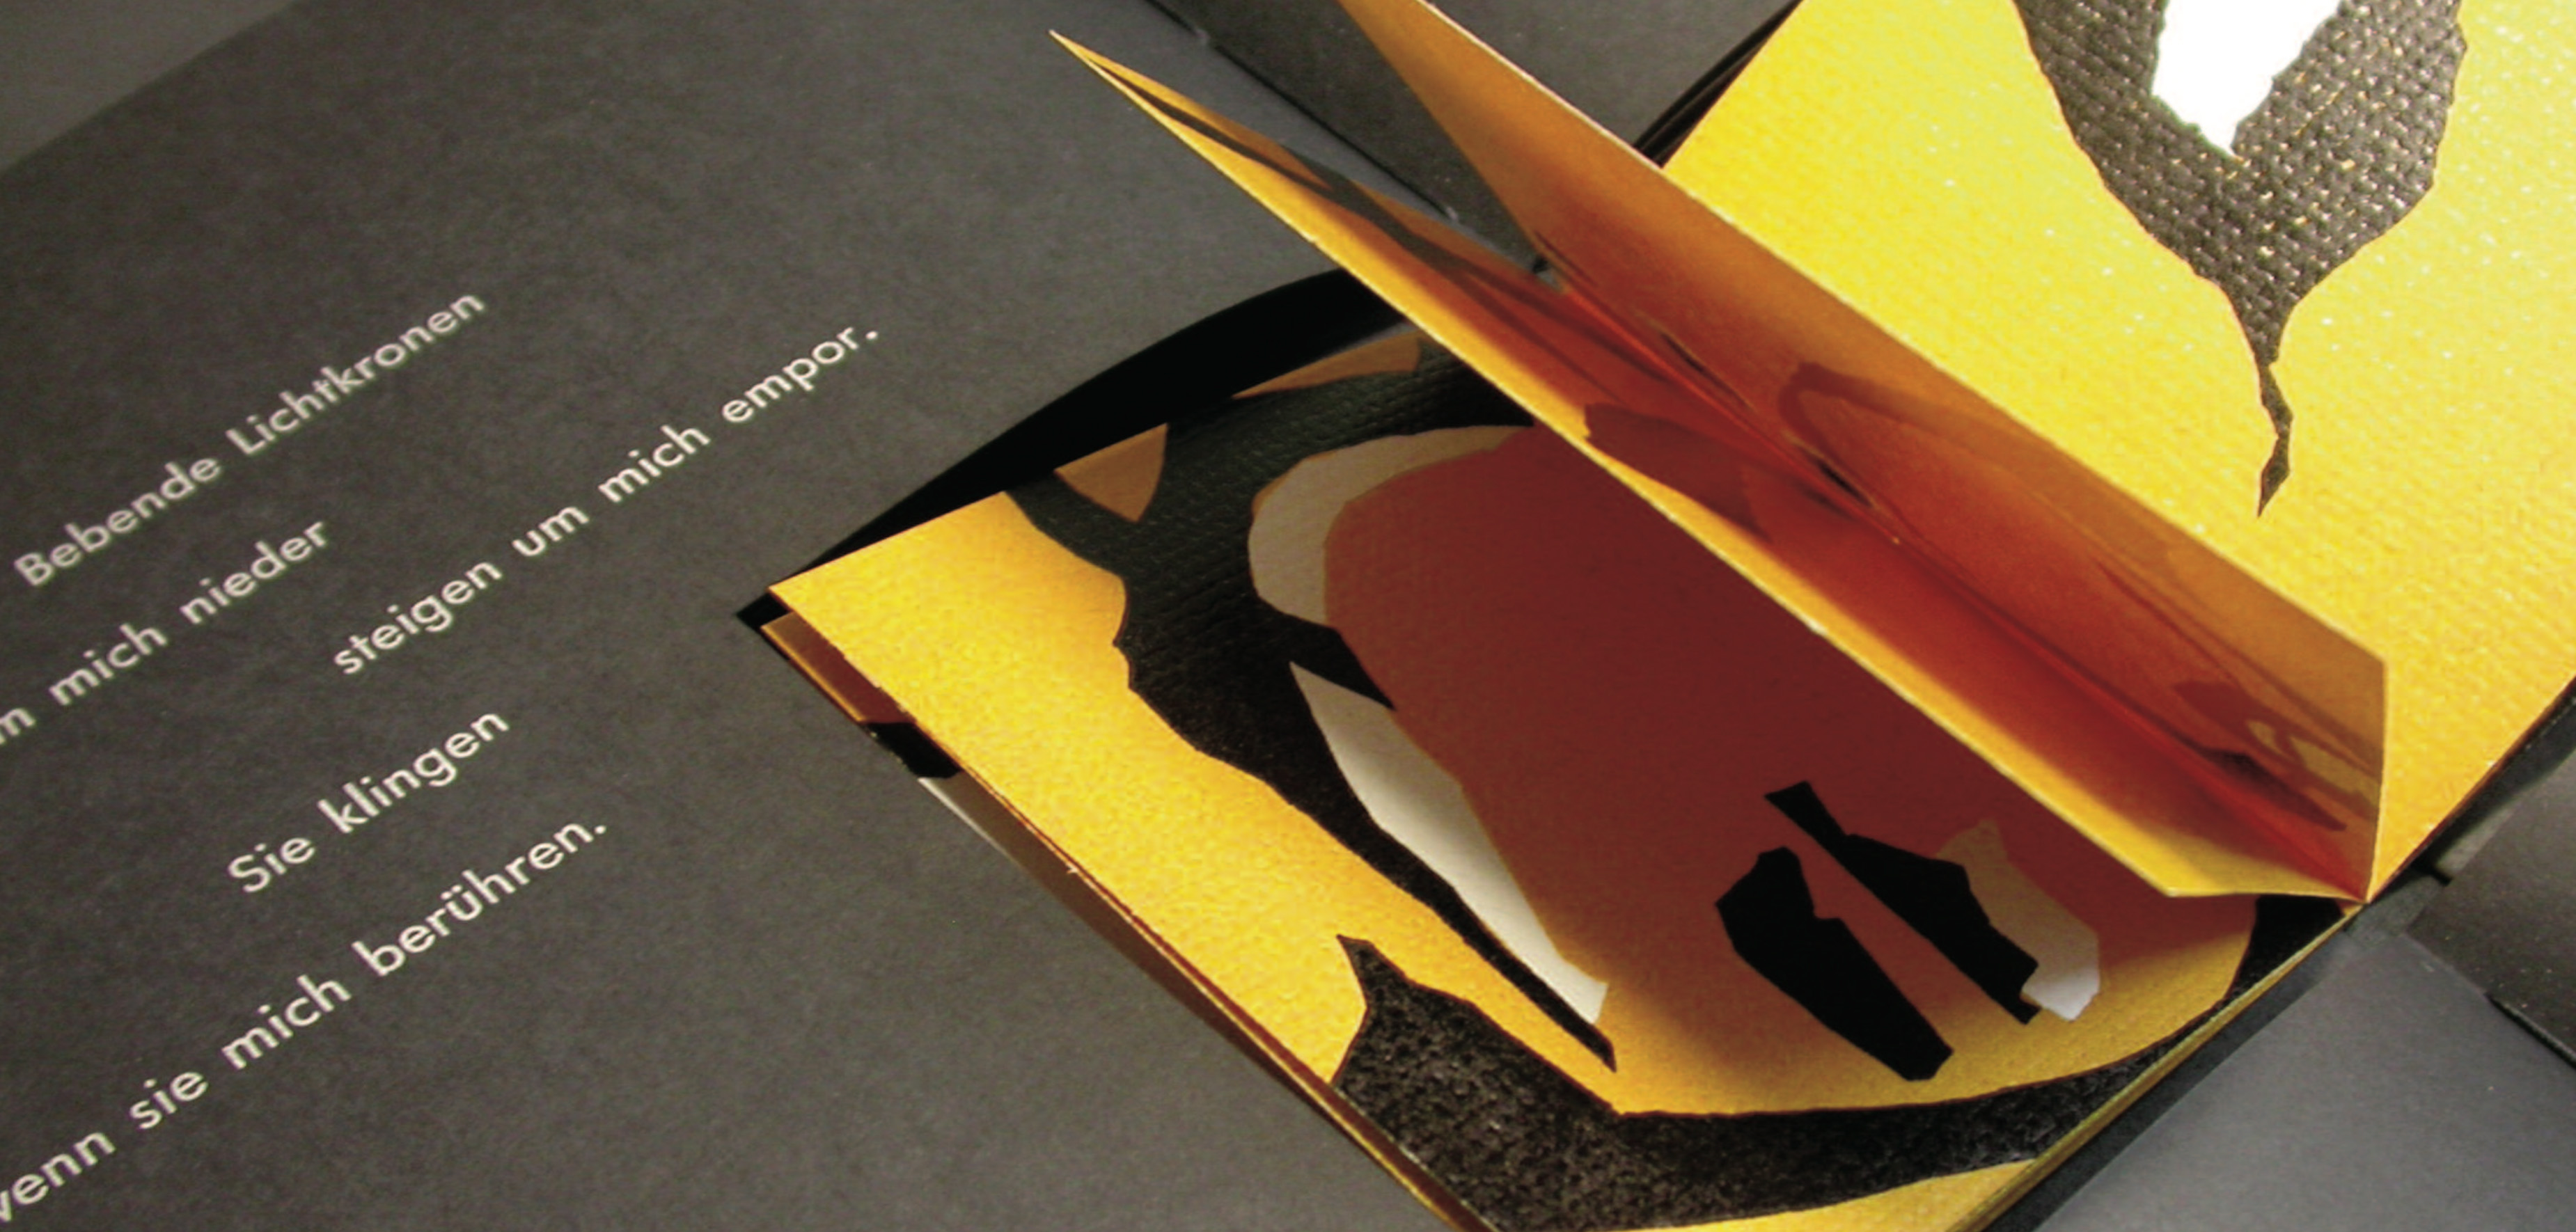 Anja Harms, Grafik-Design - Künstlerbücher - BuchSkulpturen